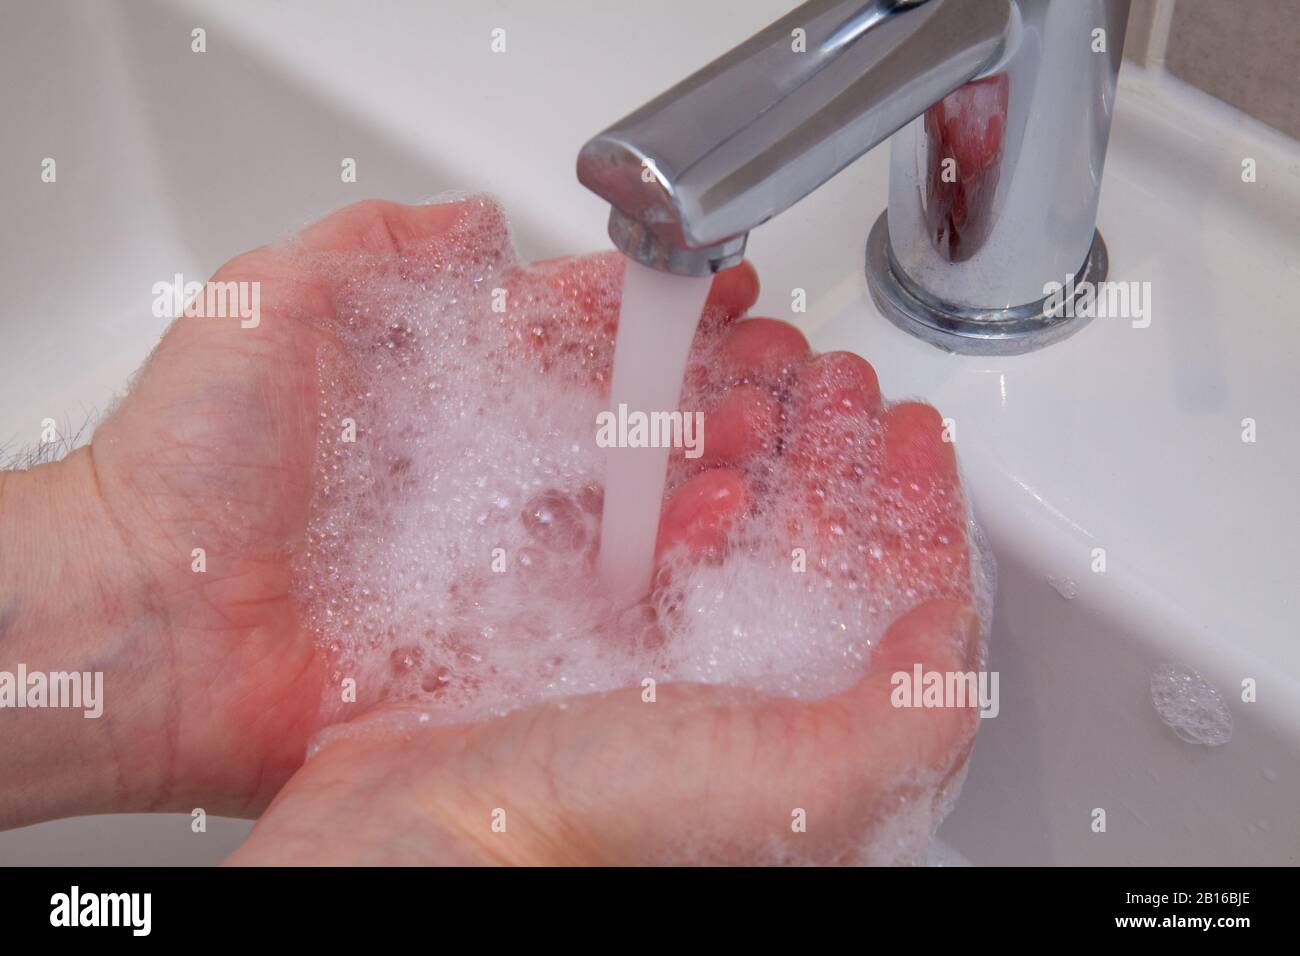 Mains lavées dans de l'eau savonneuse dans un évier sous un robinet d'eau courante. Propreté, hygiène et élimination en toute sécurité de la saleté, des virus et des bactéries. Banque D'Images